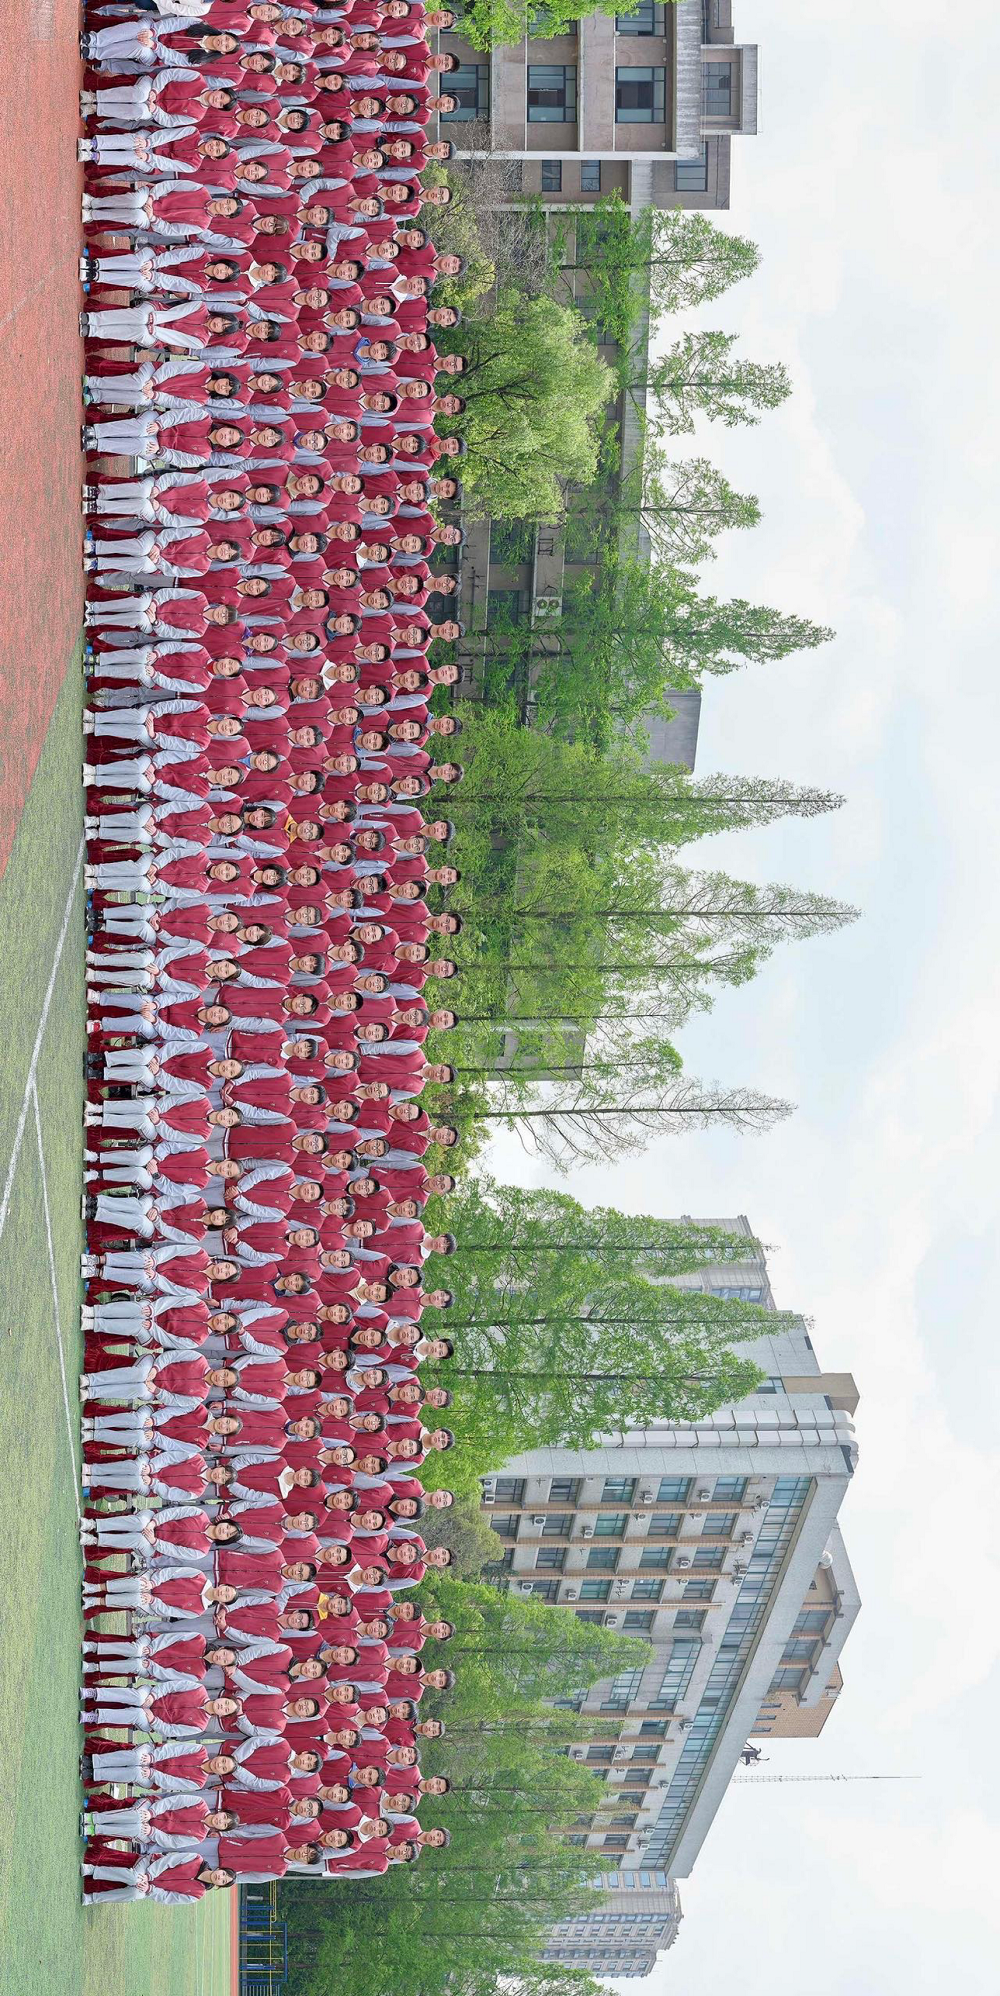 杭州一中学拍下超长千人毕业照